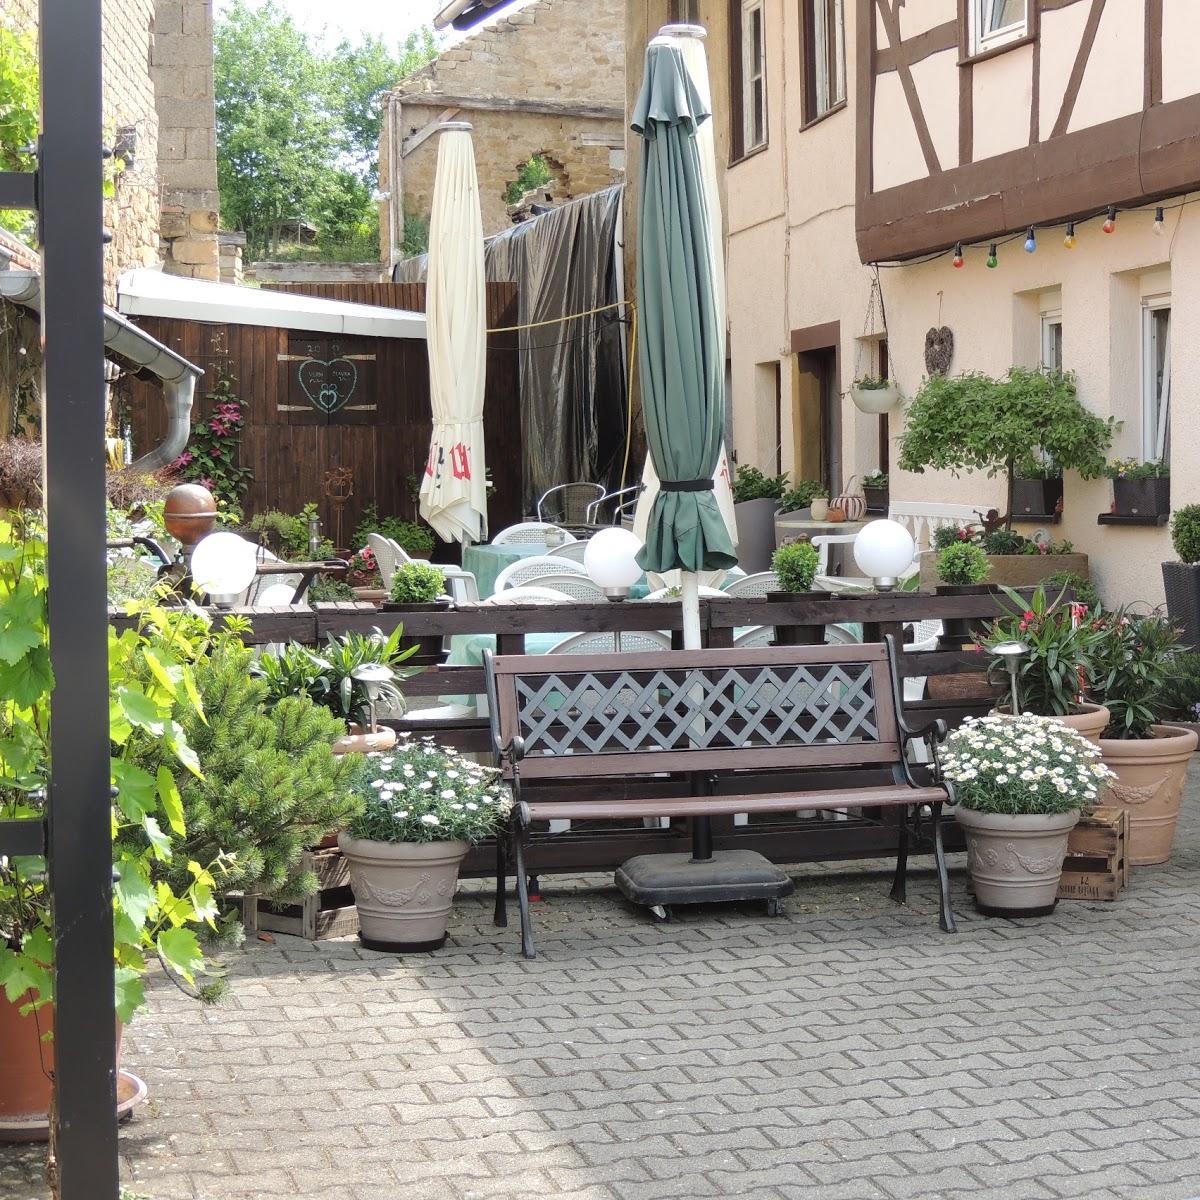 Restaurant "Gasthaus zum Dorfkrug" in  Lettweiler